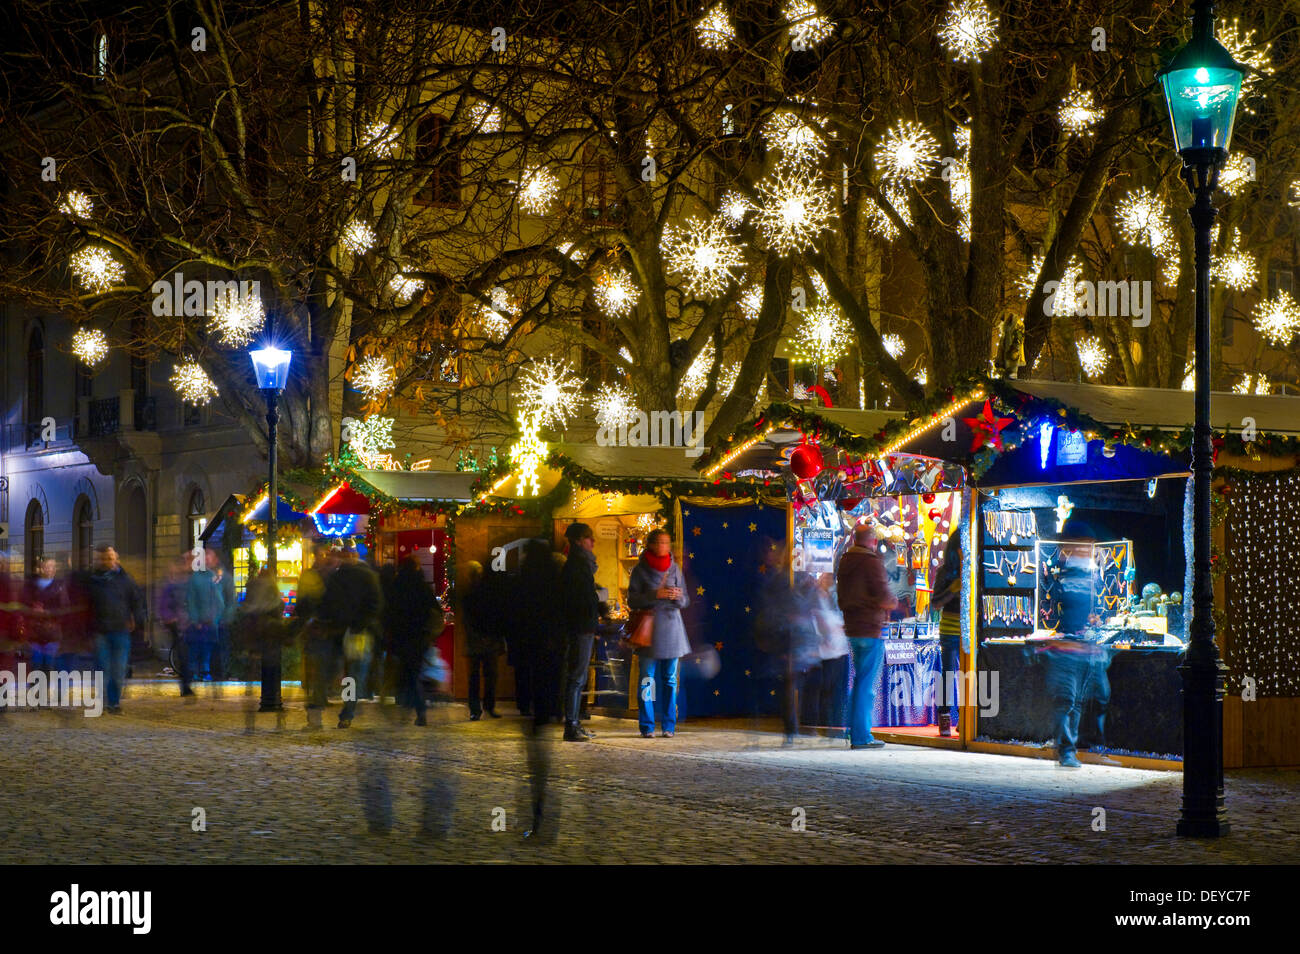 Christmas market, Basel, Switzerland, Europe Stock Photo